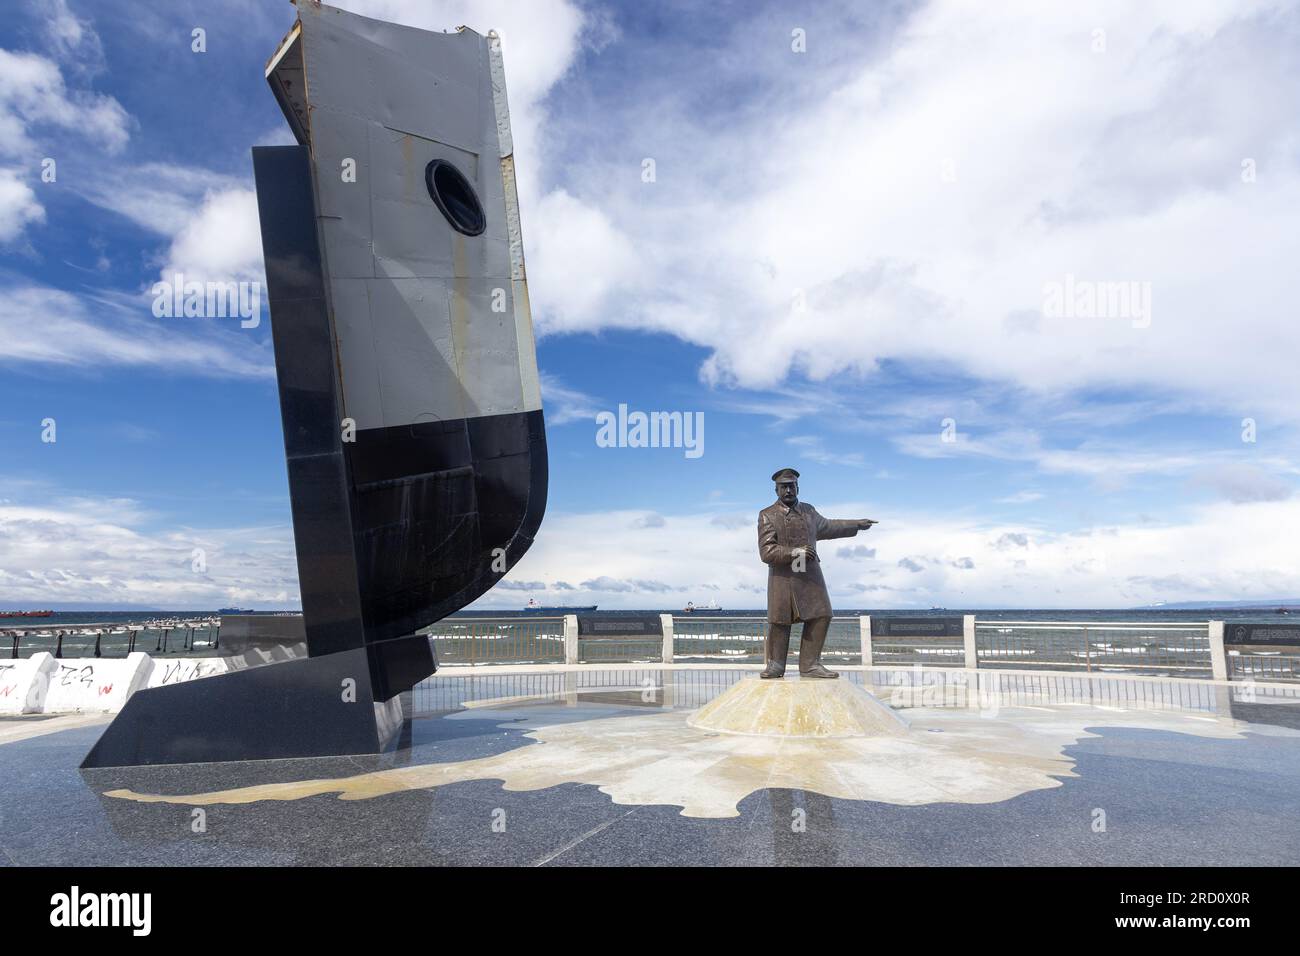 Statue commémorative de Piloto Luis Pardo sur Punta Arenas, Chili Costanera Waterfront commémorant le sauvetage de l'équipage du navire Endurance de l'île de l'éléphant en 1916 Banque D'Images